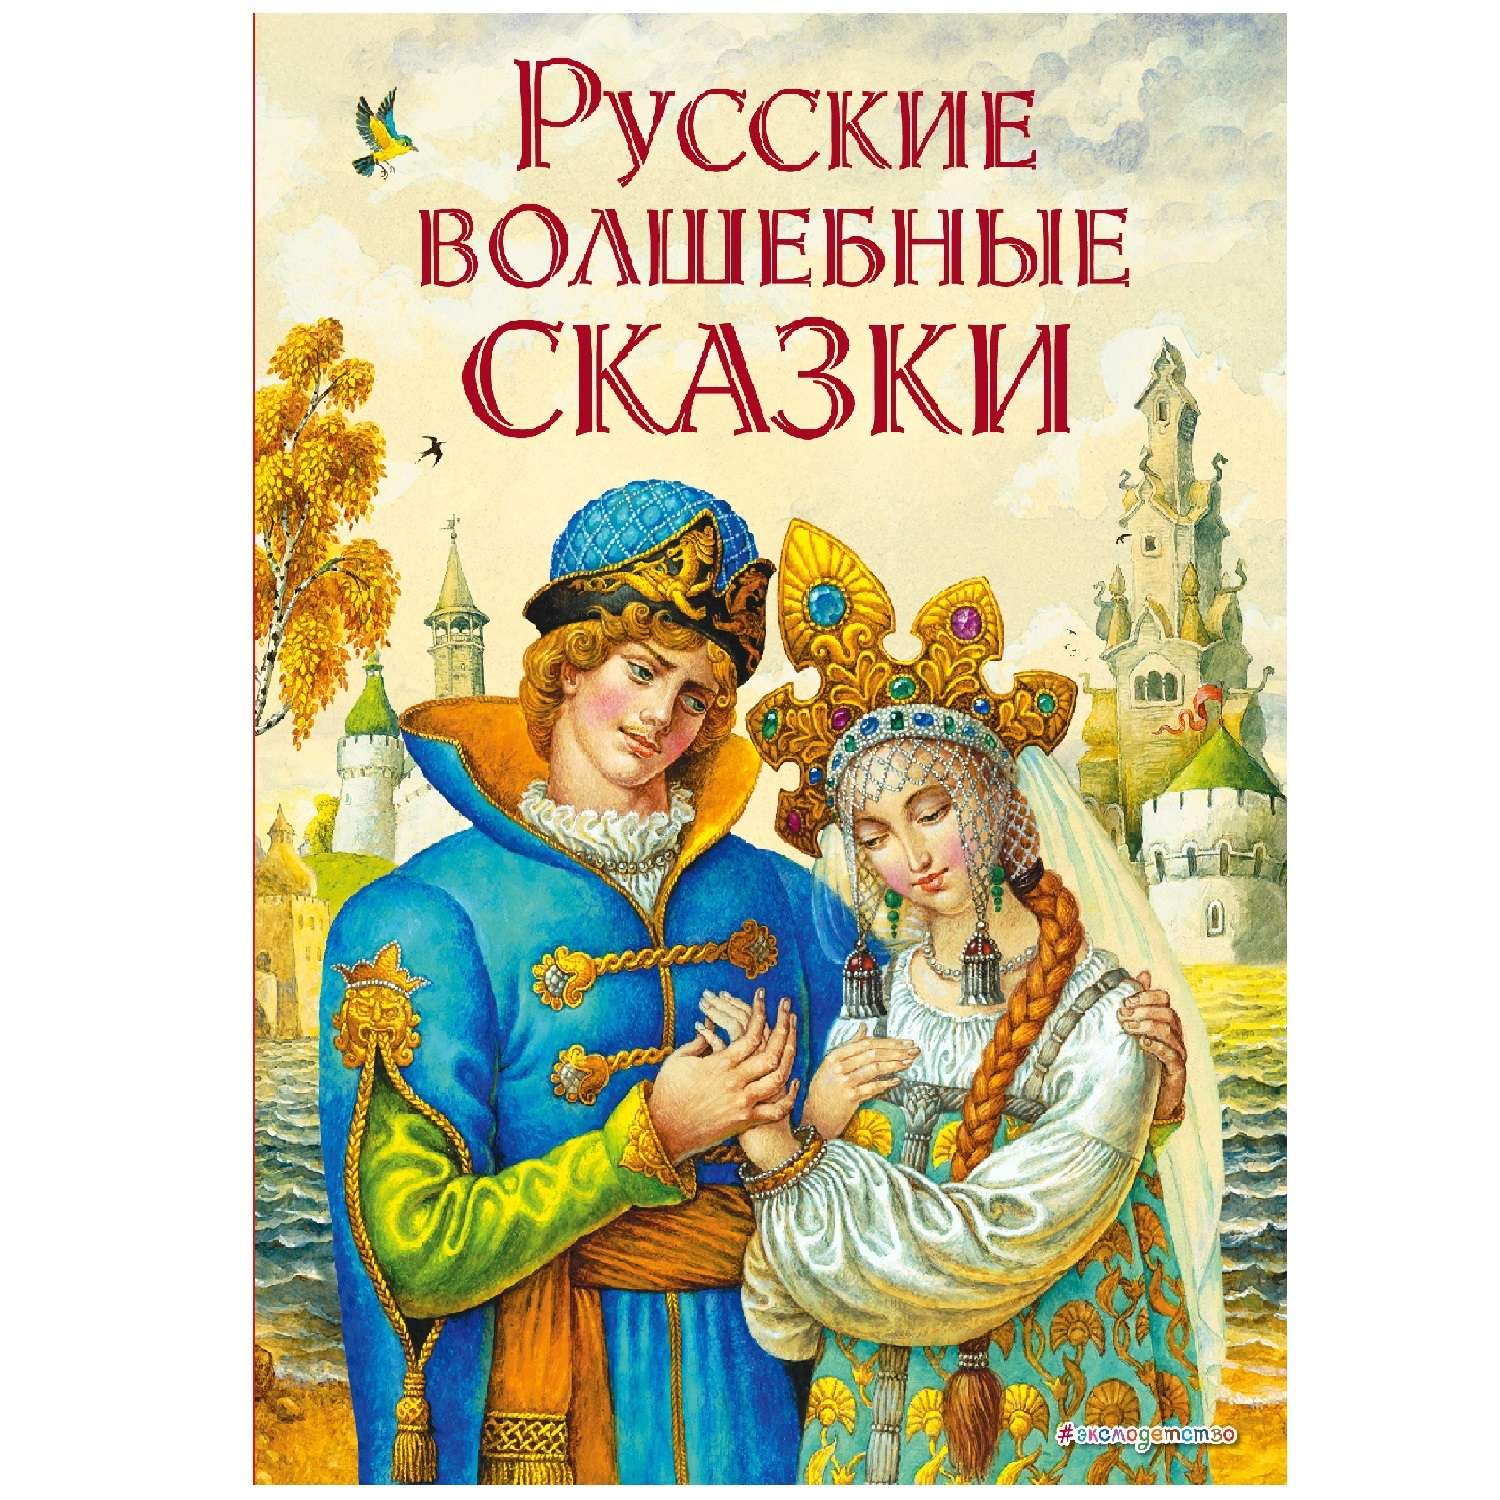 Книга Эксмо Русские волшебные сказки ил. И. Егунова - фото 1